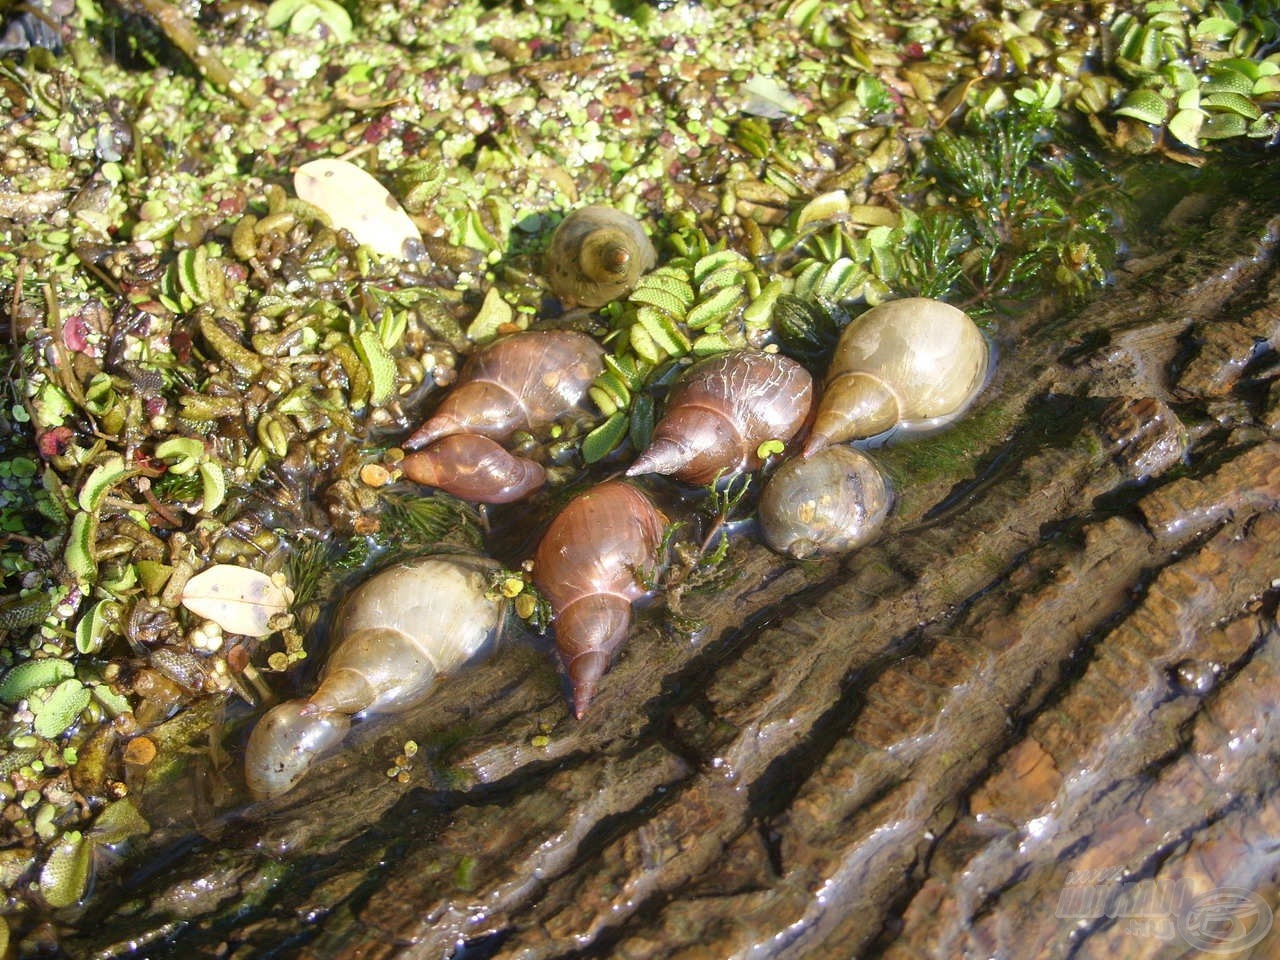 Az abádszalóki terület bővelkedik természetes táplálékban, ami főként vízi csigákat és kagylókat jelent…